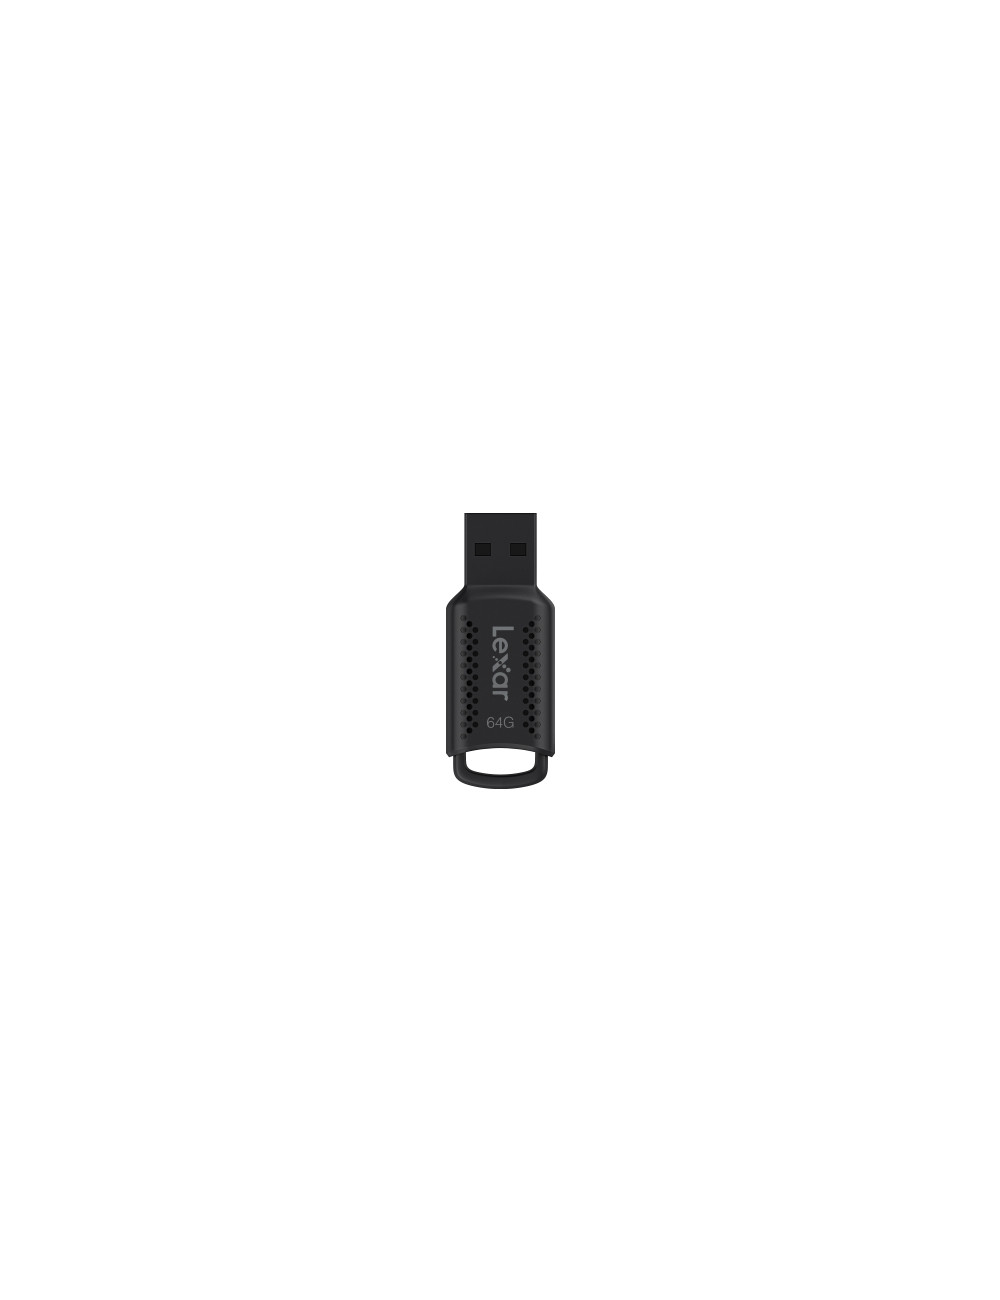 Lexar | USB Flash Drive | JumpDrive V400 | 64 GB | USB 3.0 | Black